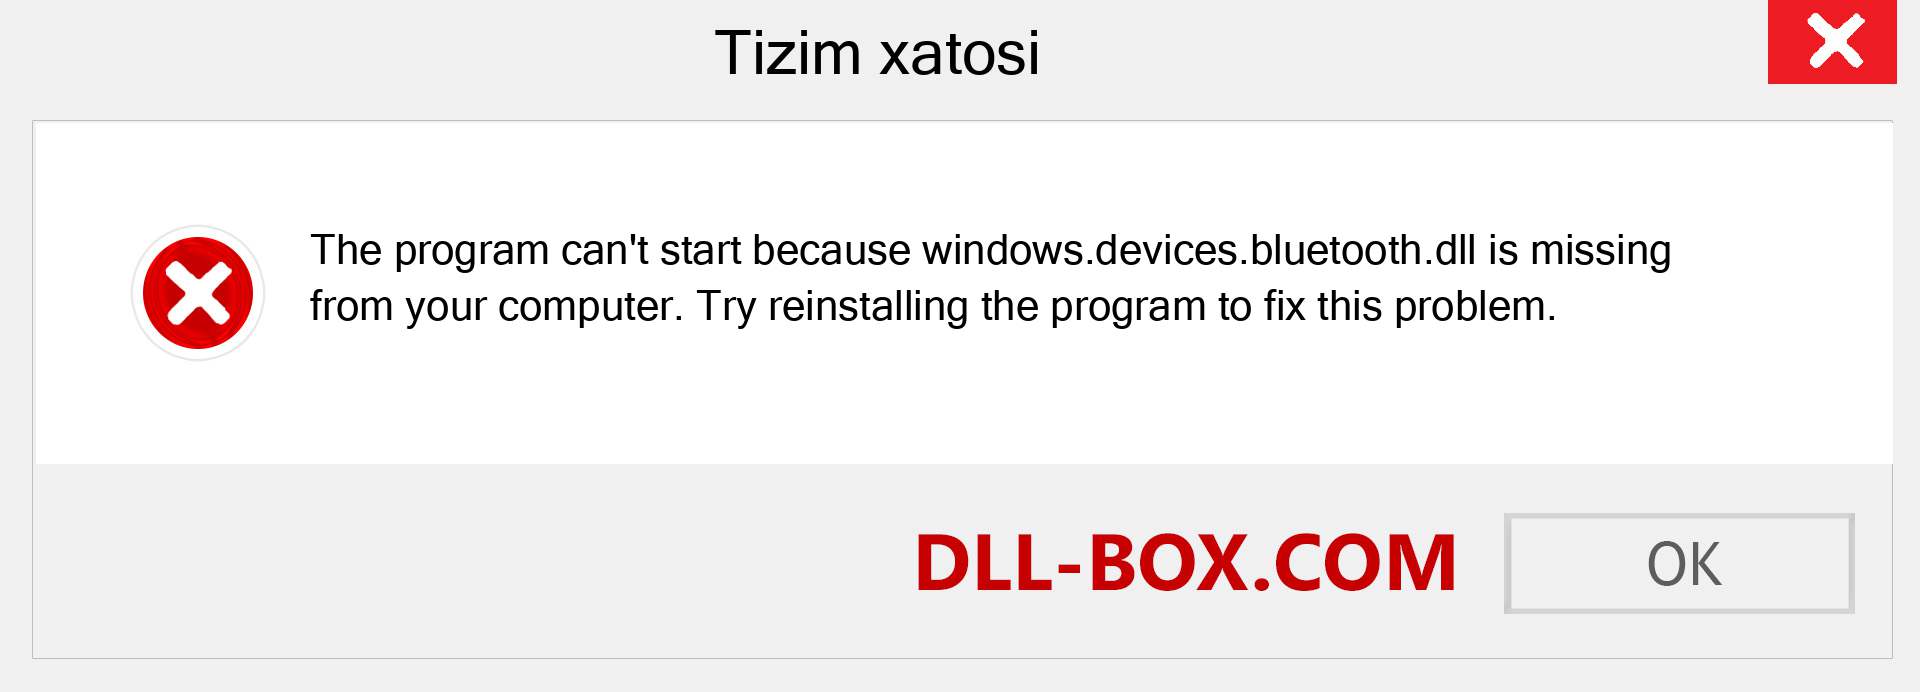 windows.devices.bluetooth.dll fayli yo'qolganmi?. Windows 7, 8, 10 uchun yuklab olish - Windowsda windows.devices.bluetooth dll etishmayotgan xatoni tuzating, rasmlar, rasmlar